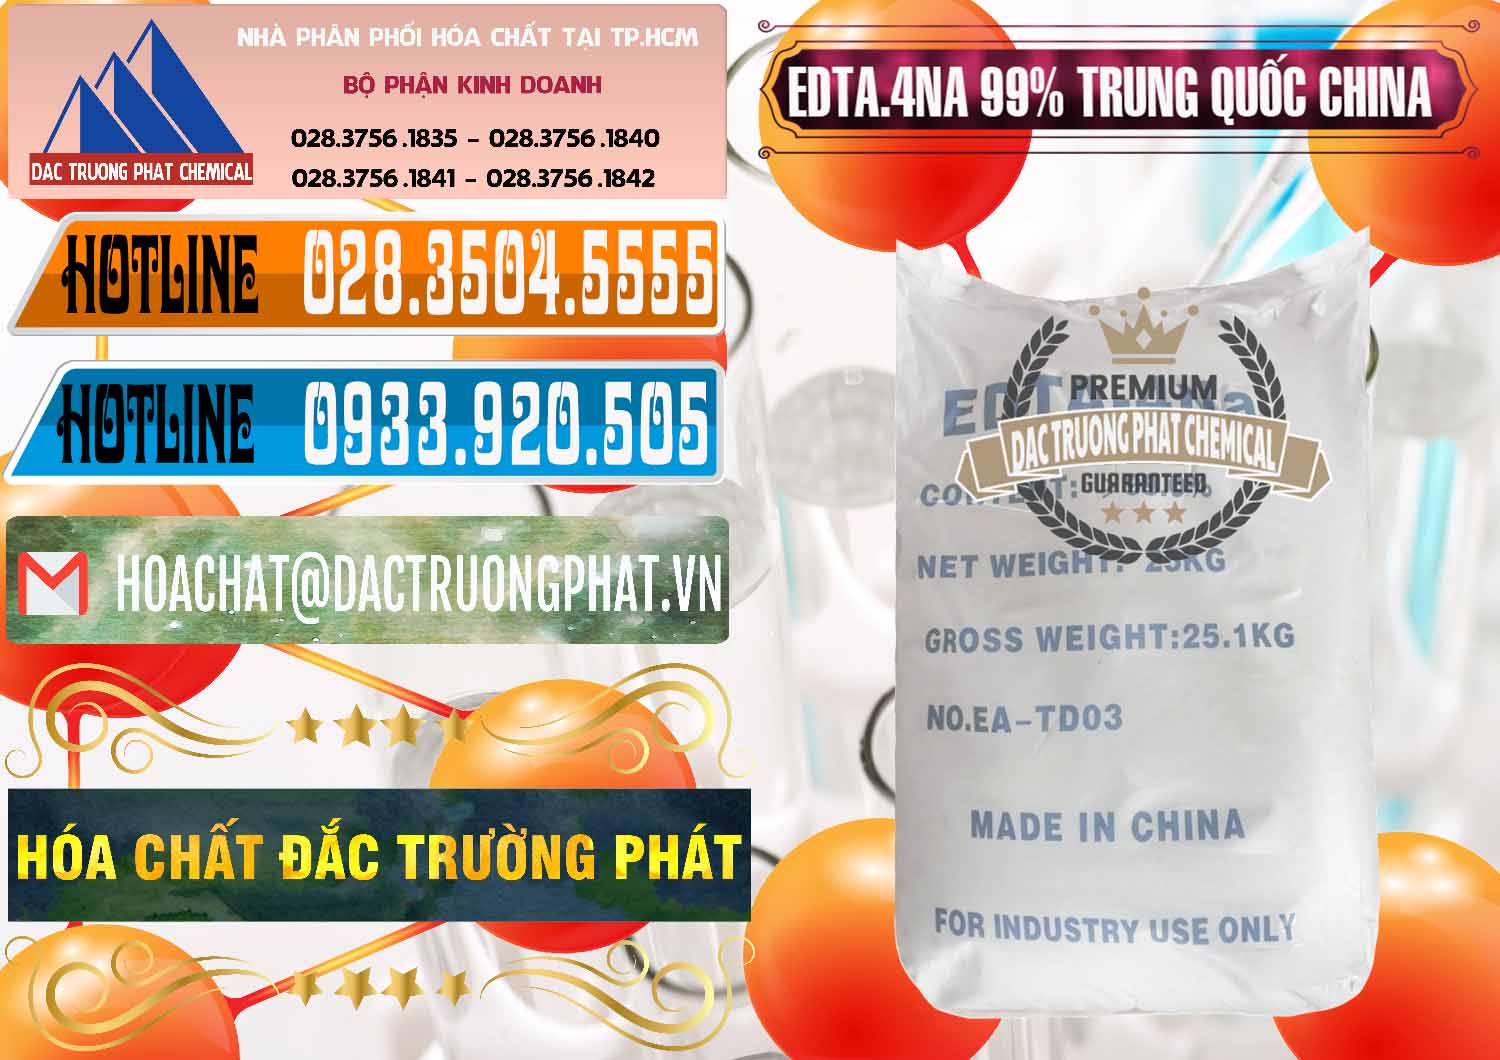 Nơi chuyên phân phối & bán EDTA.4NA - EDTA Muối 99% Trung Quốc China - 0292 - Nhà cung cấp ( phân phối ) hóa chất tại TP.HCM - stmp.net